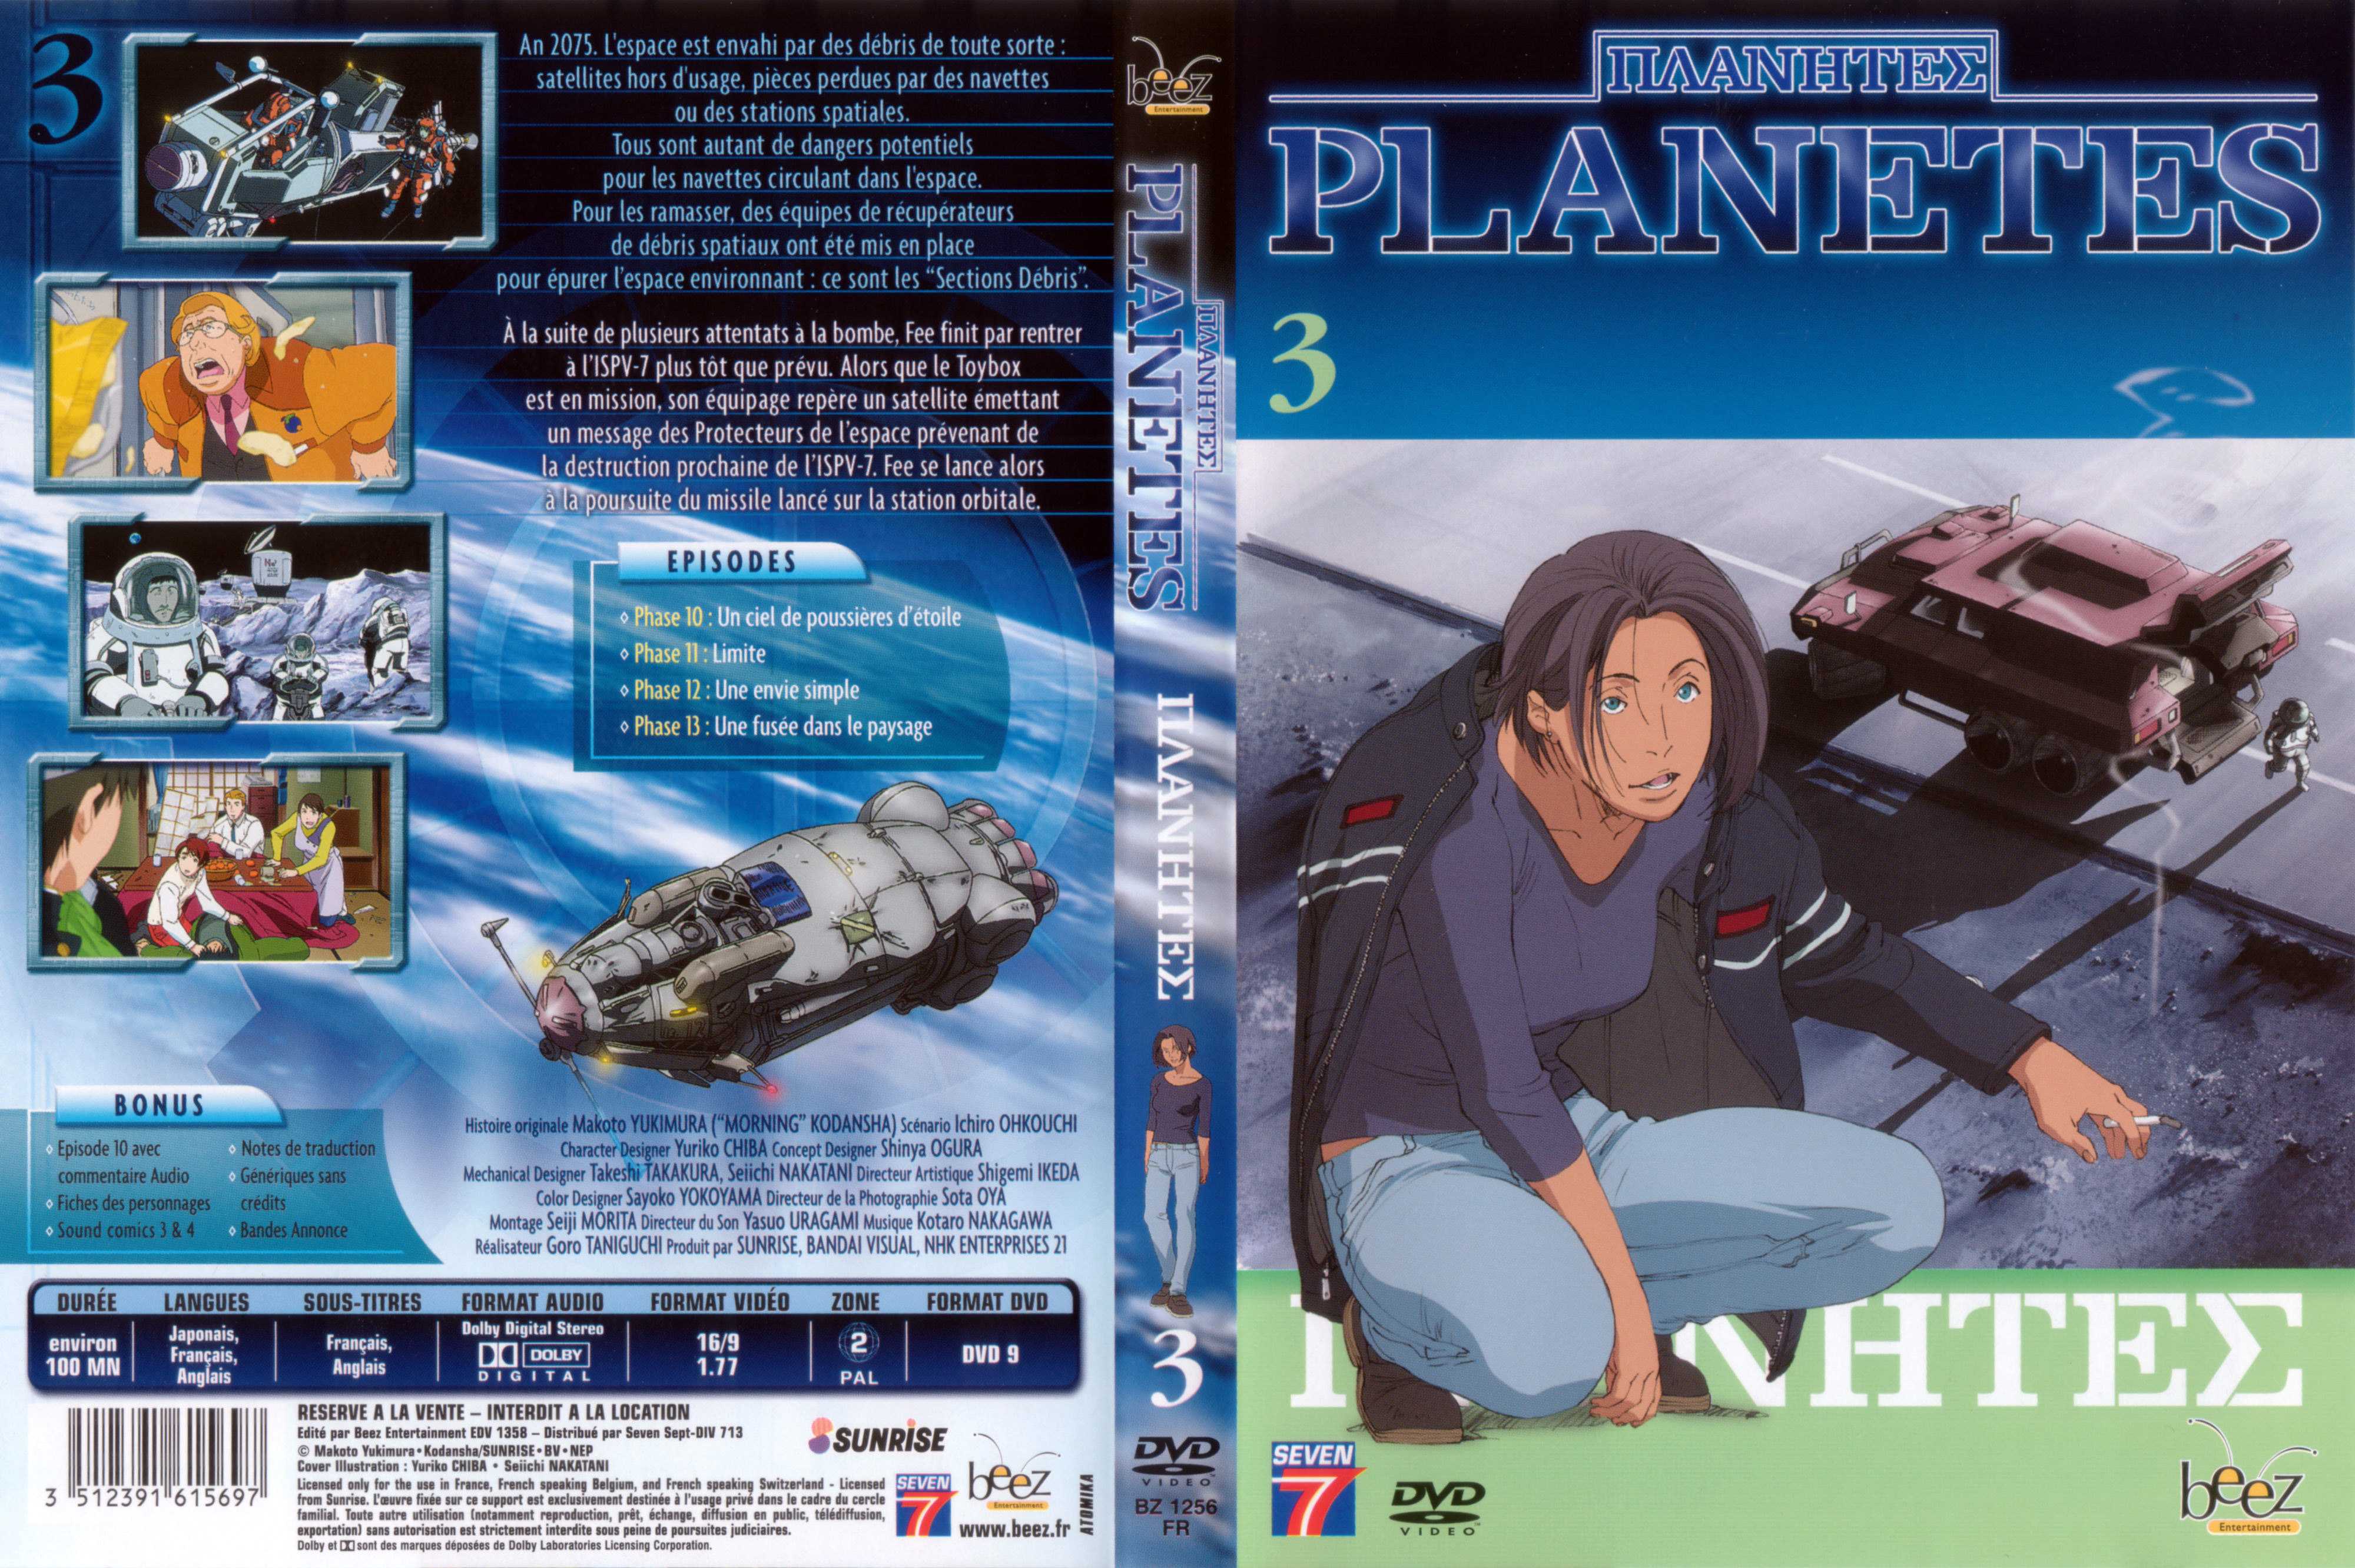 Jaquette DVD Planetes vol 3